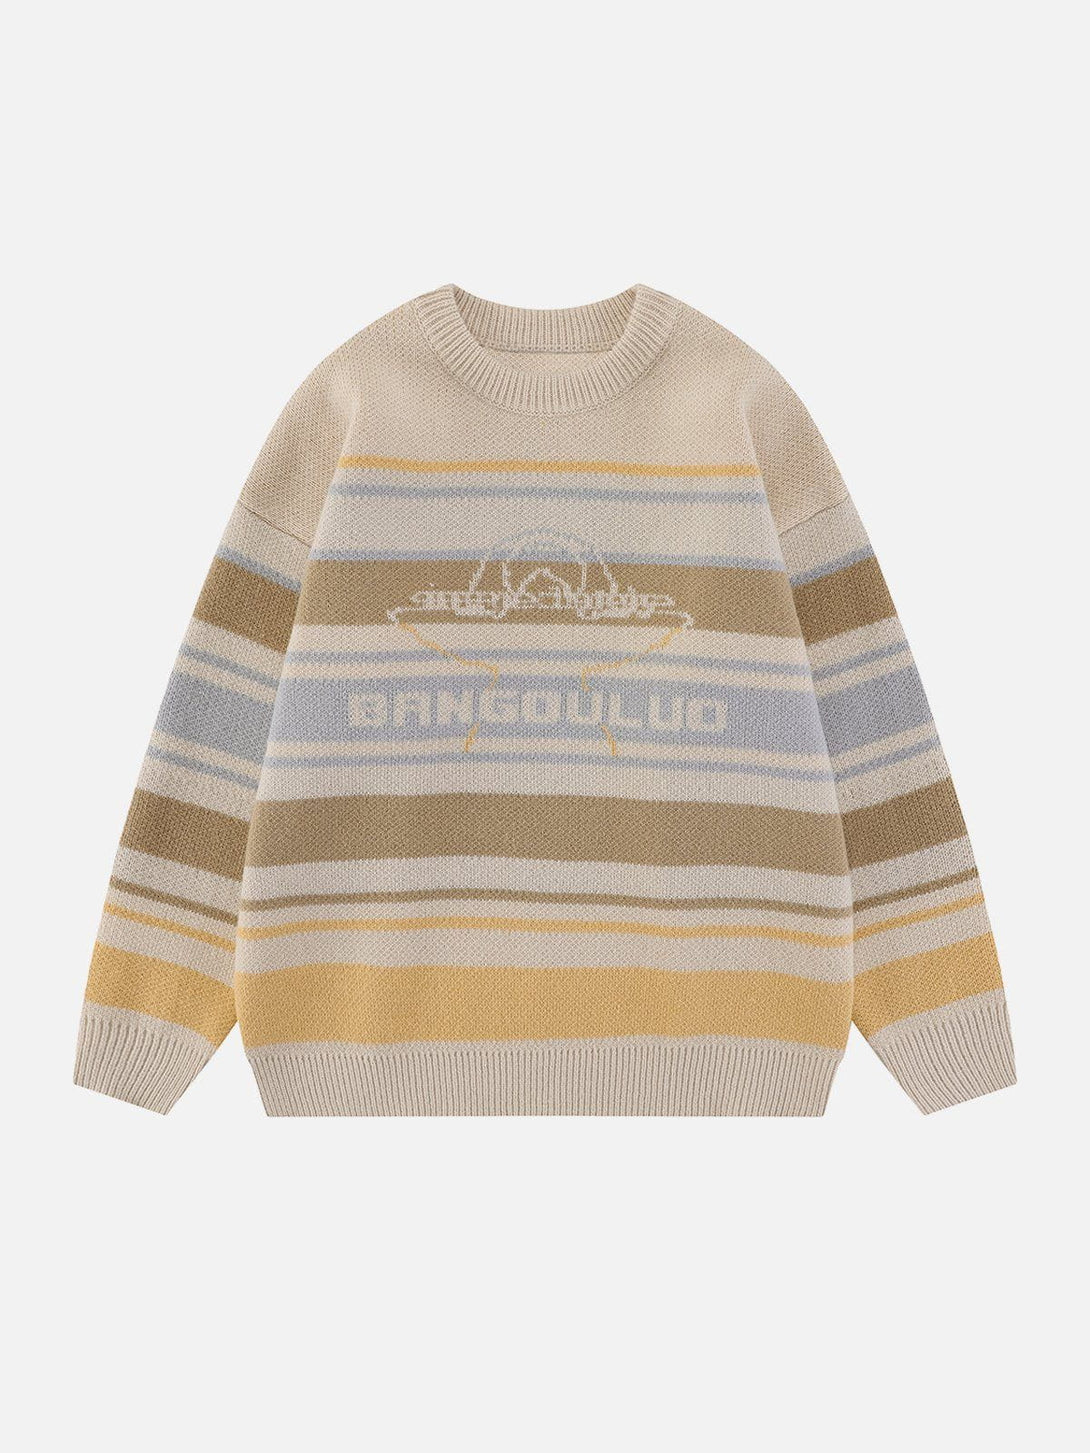 AlanBalen® - Vintage Stripes Sweater AlanBalen